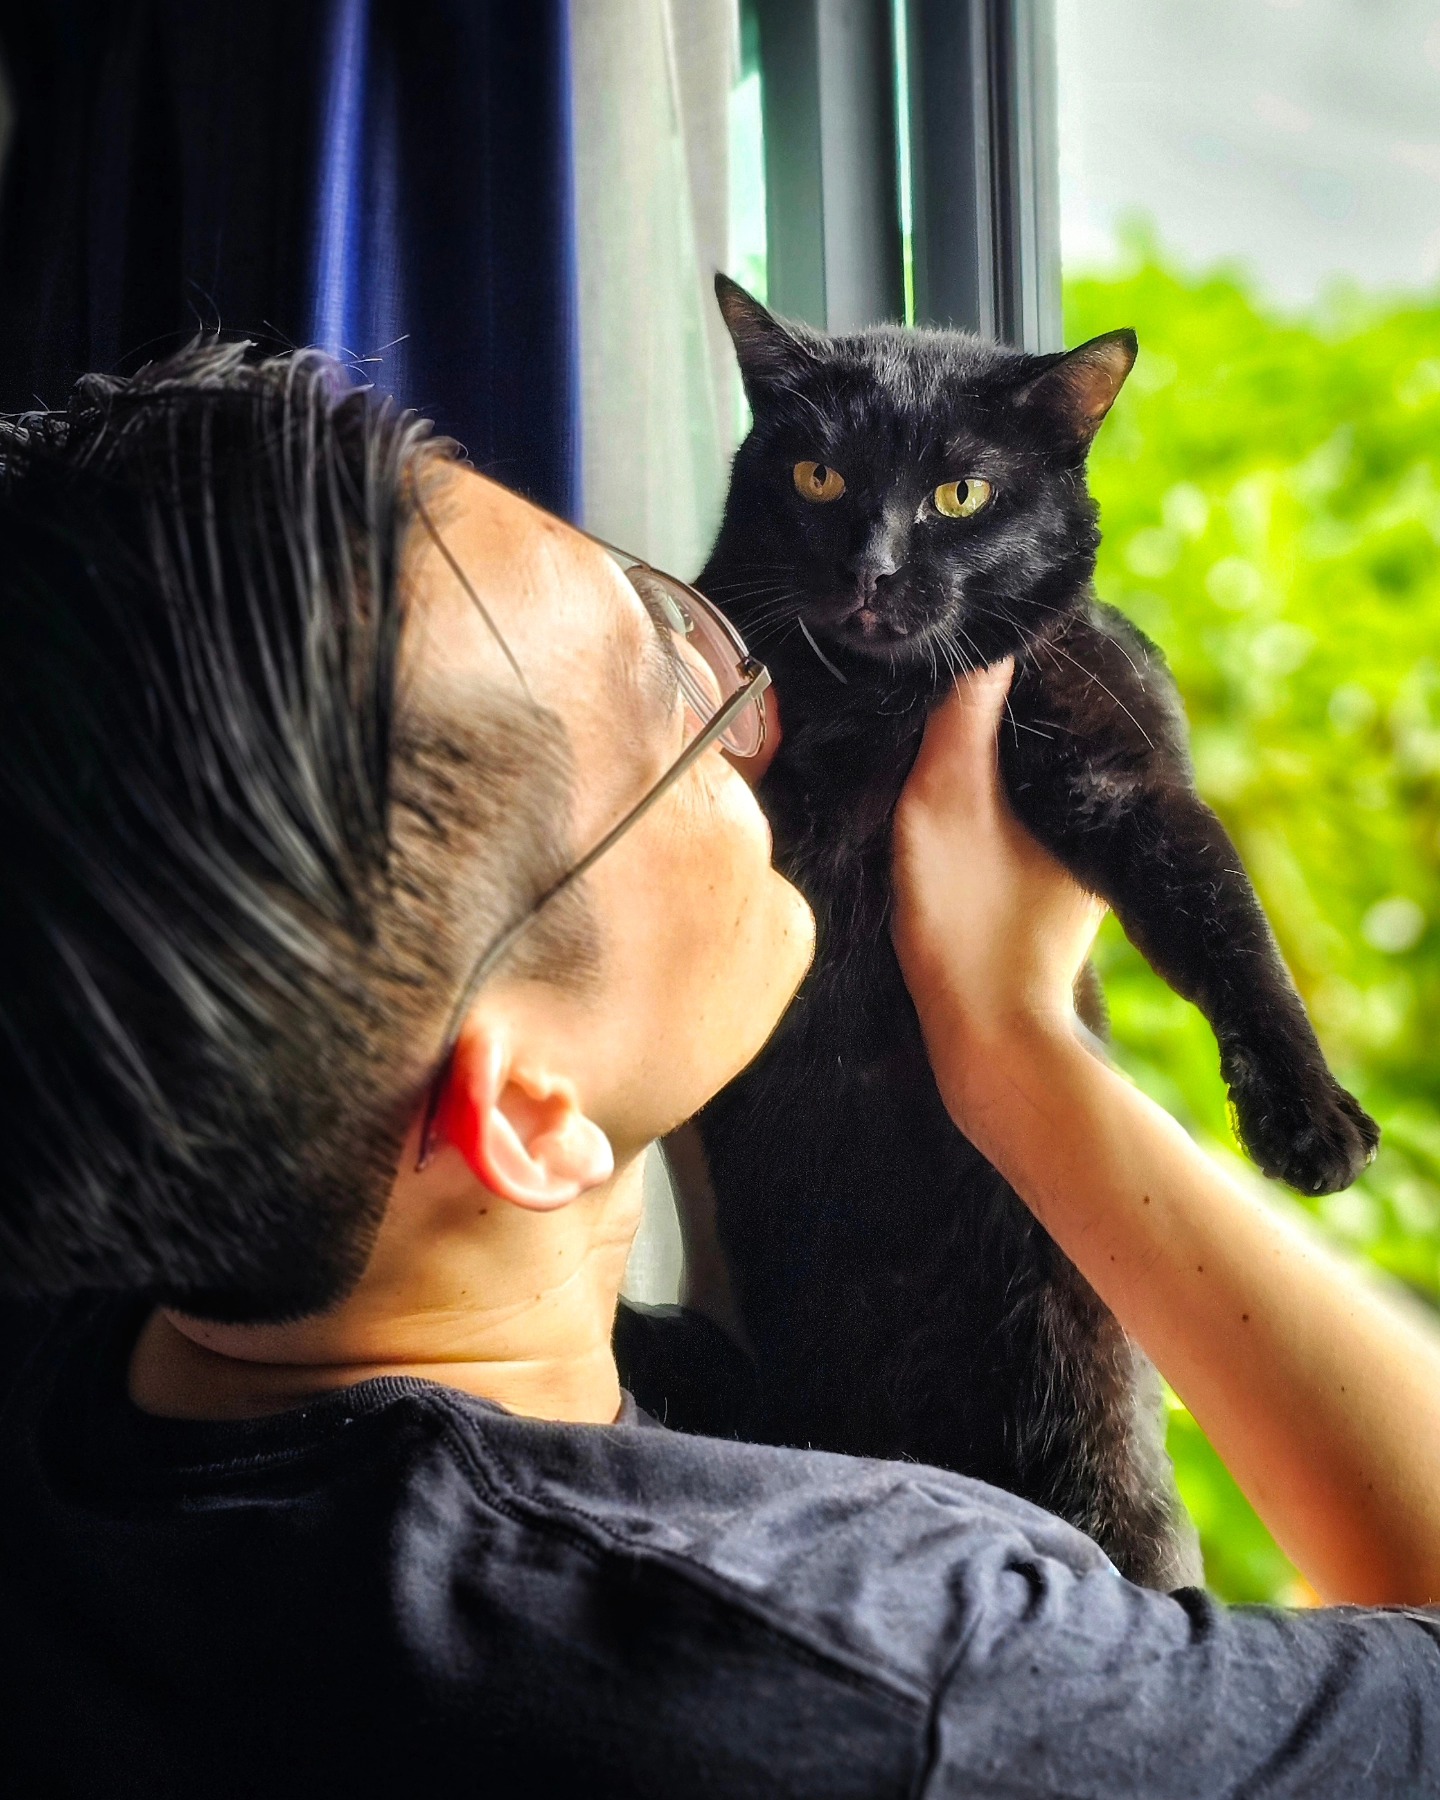 เจ้าของเว็บไซต์เหมียวบาน (meowbarn) อุ้มแมวดำชื่อเซลิน่า